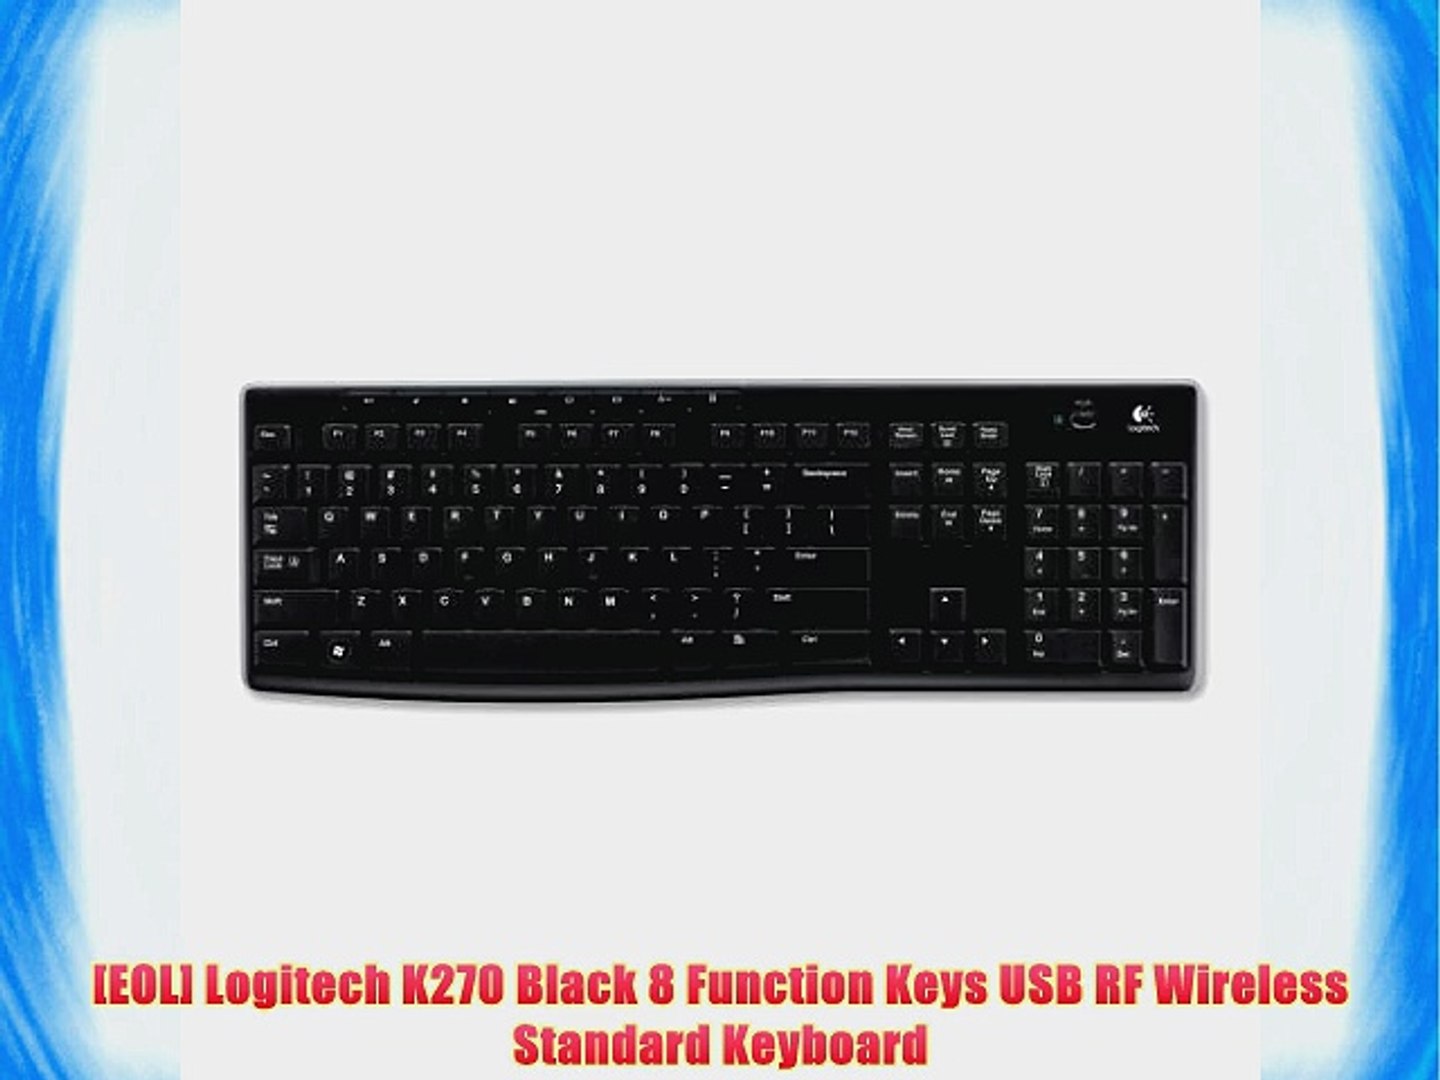 EOL] Logitech K270 Black 8 Function Keys USB RF Wireless Standard Keyboard  - video Dailymotion